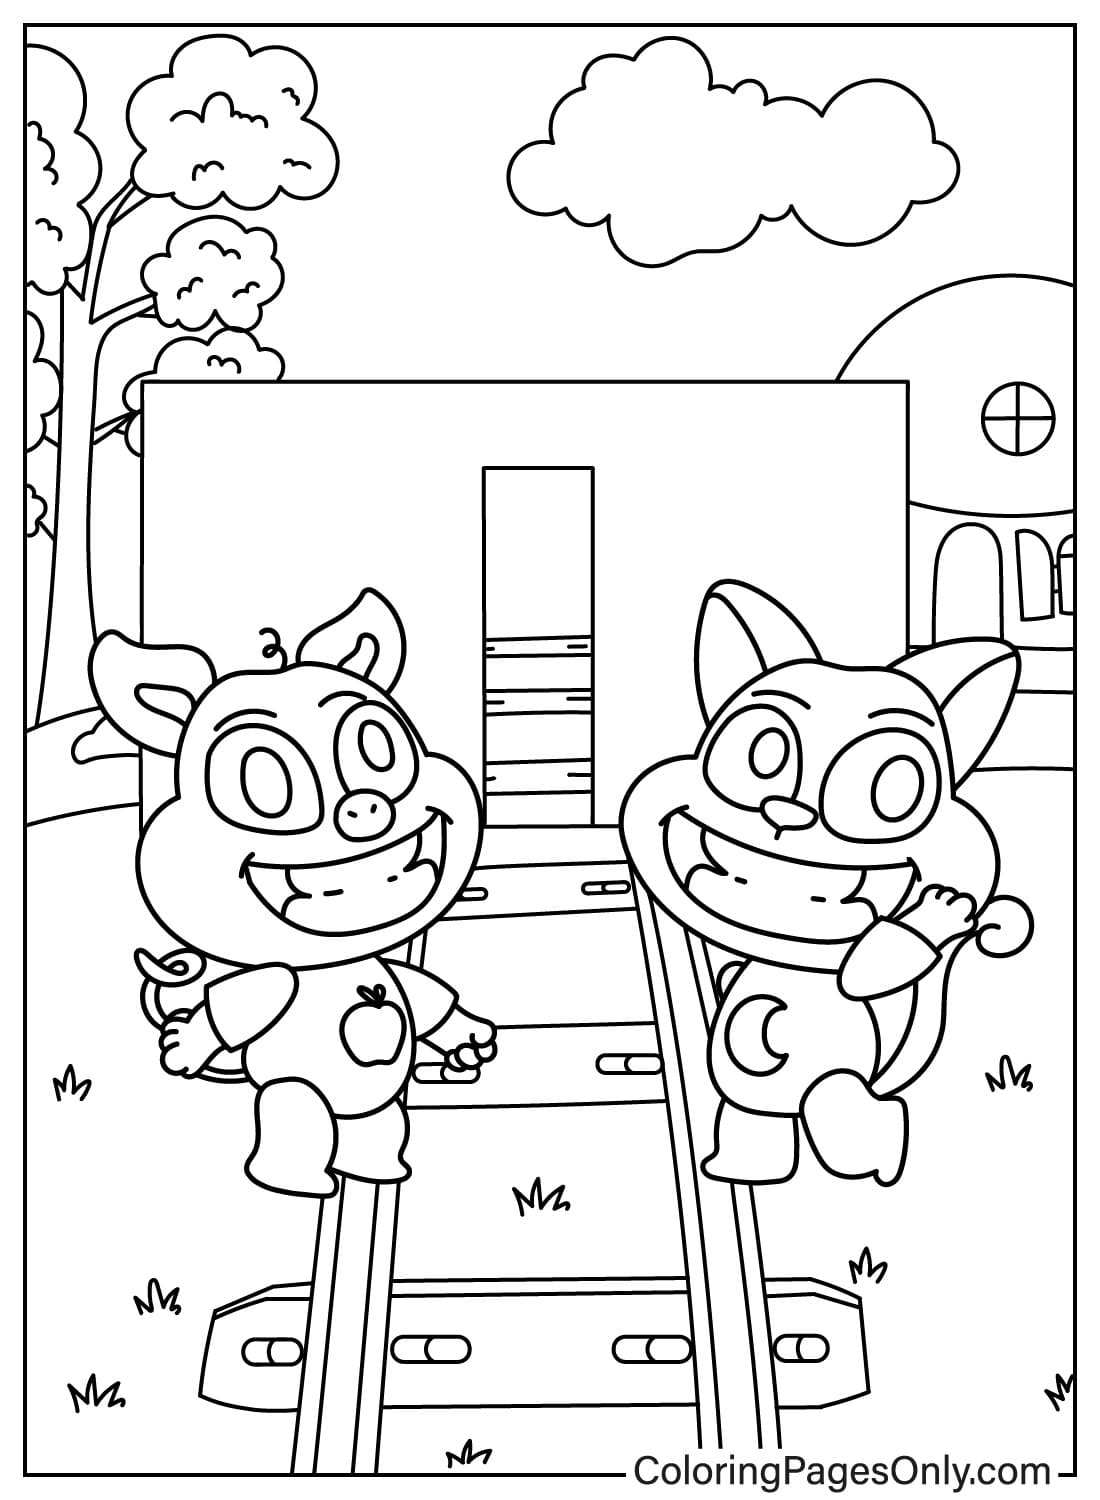 Página para colorir PickyPiggy e CatNap de Smiling Critters